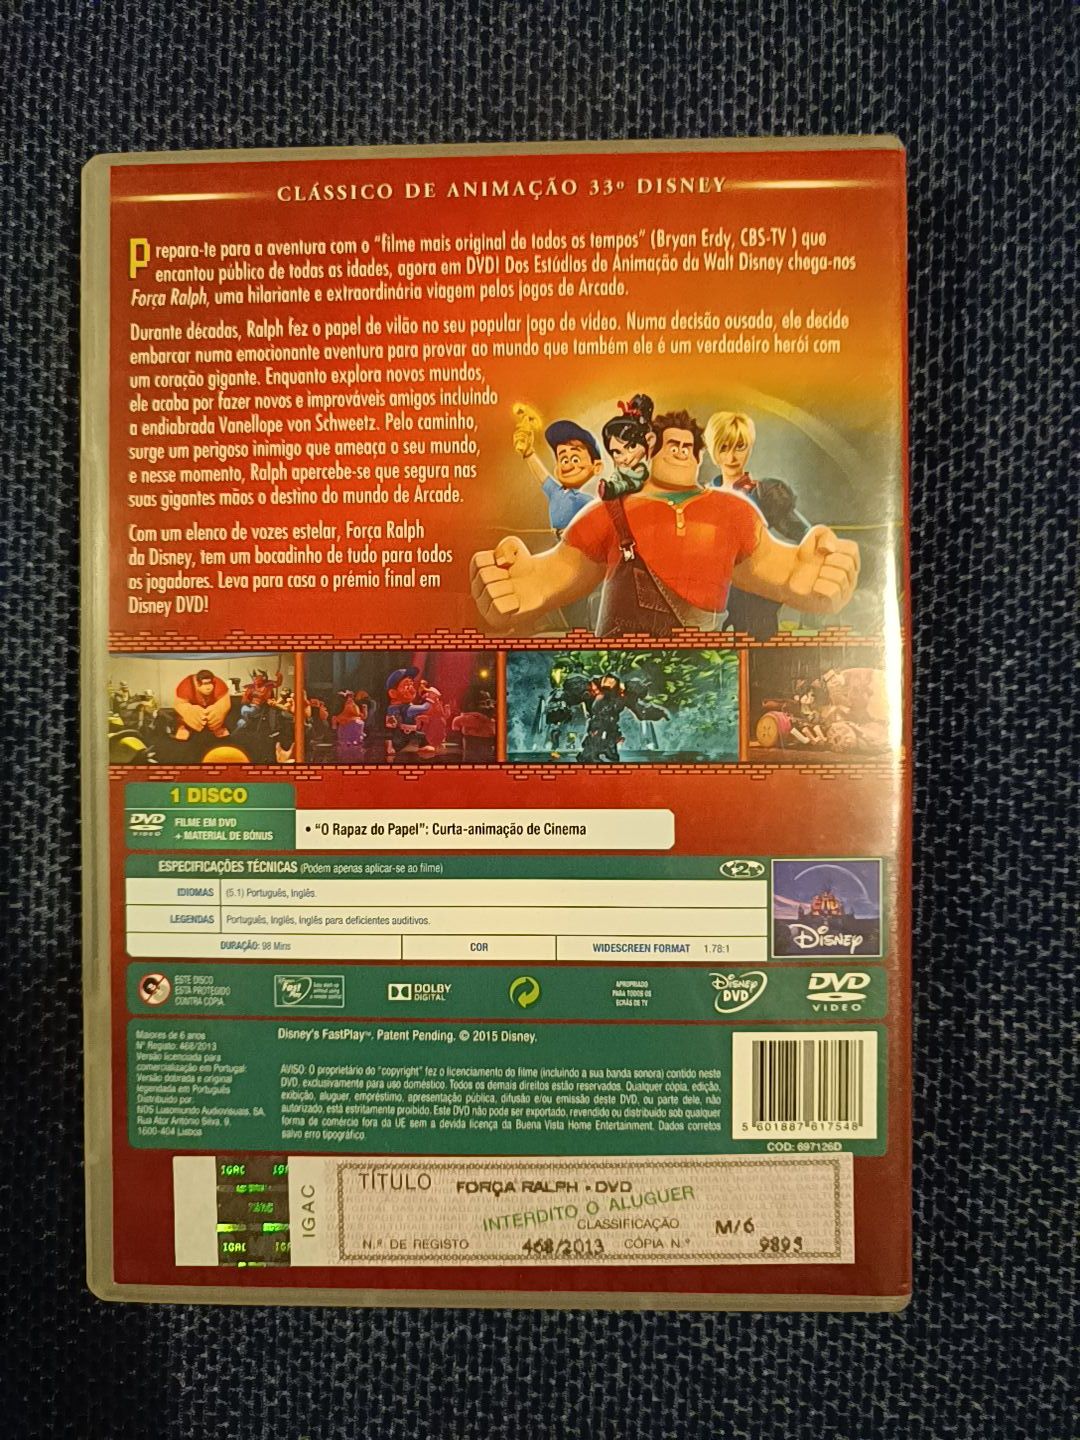 DVD do filme "Força Ralph", da Disney (portes grátis)